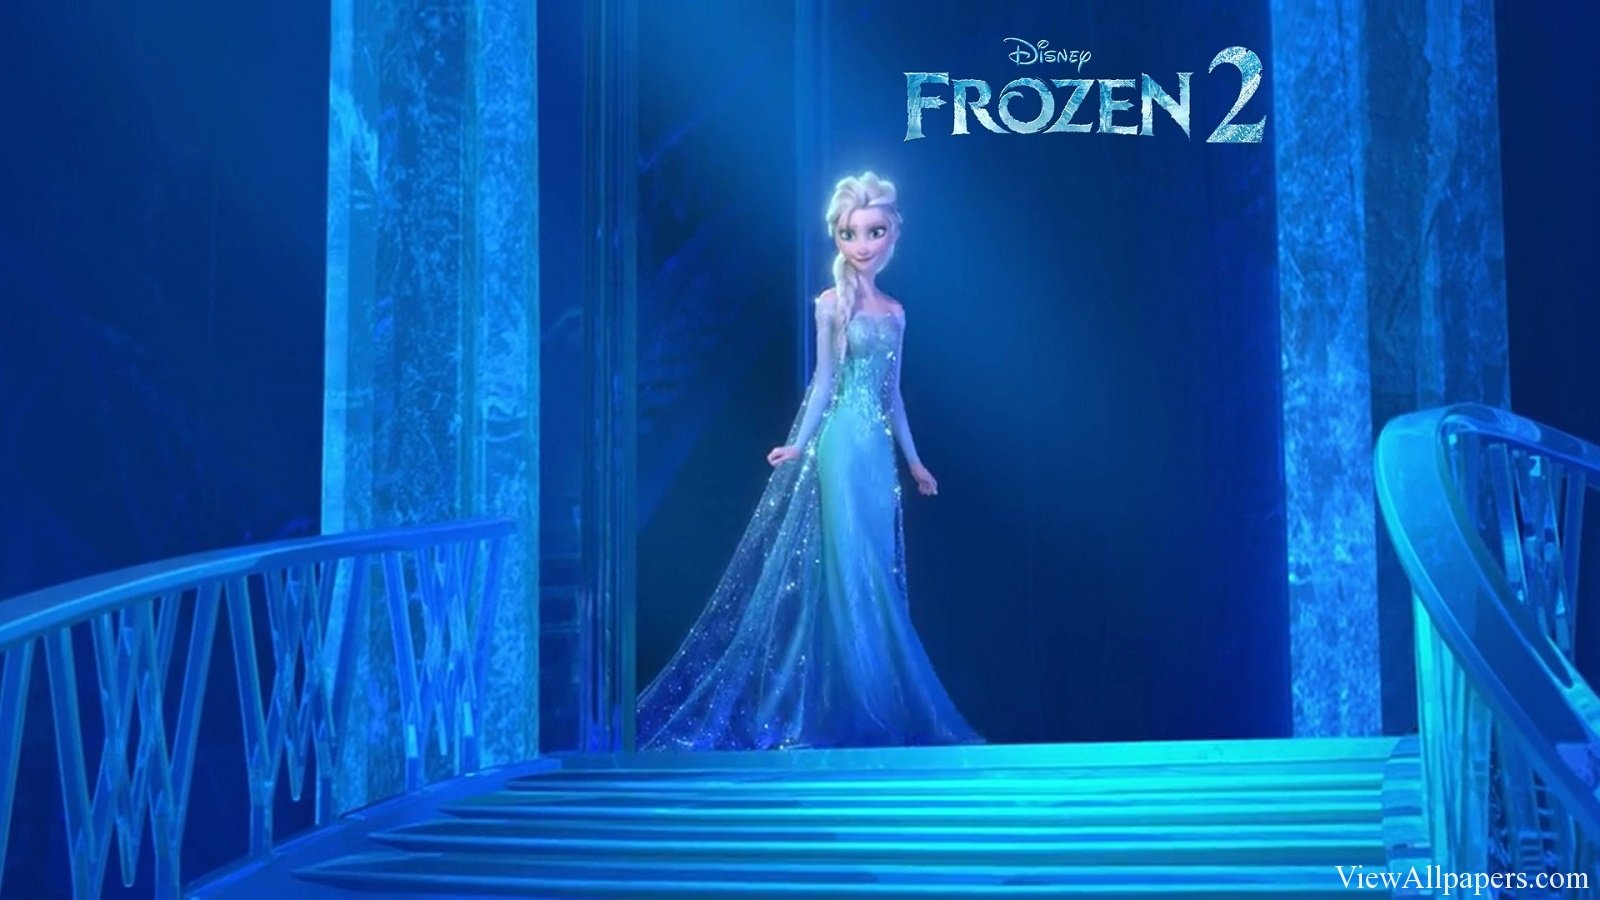 Disney Frozen 2 Movie High Resolution Wallpaper Free download Disney